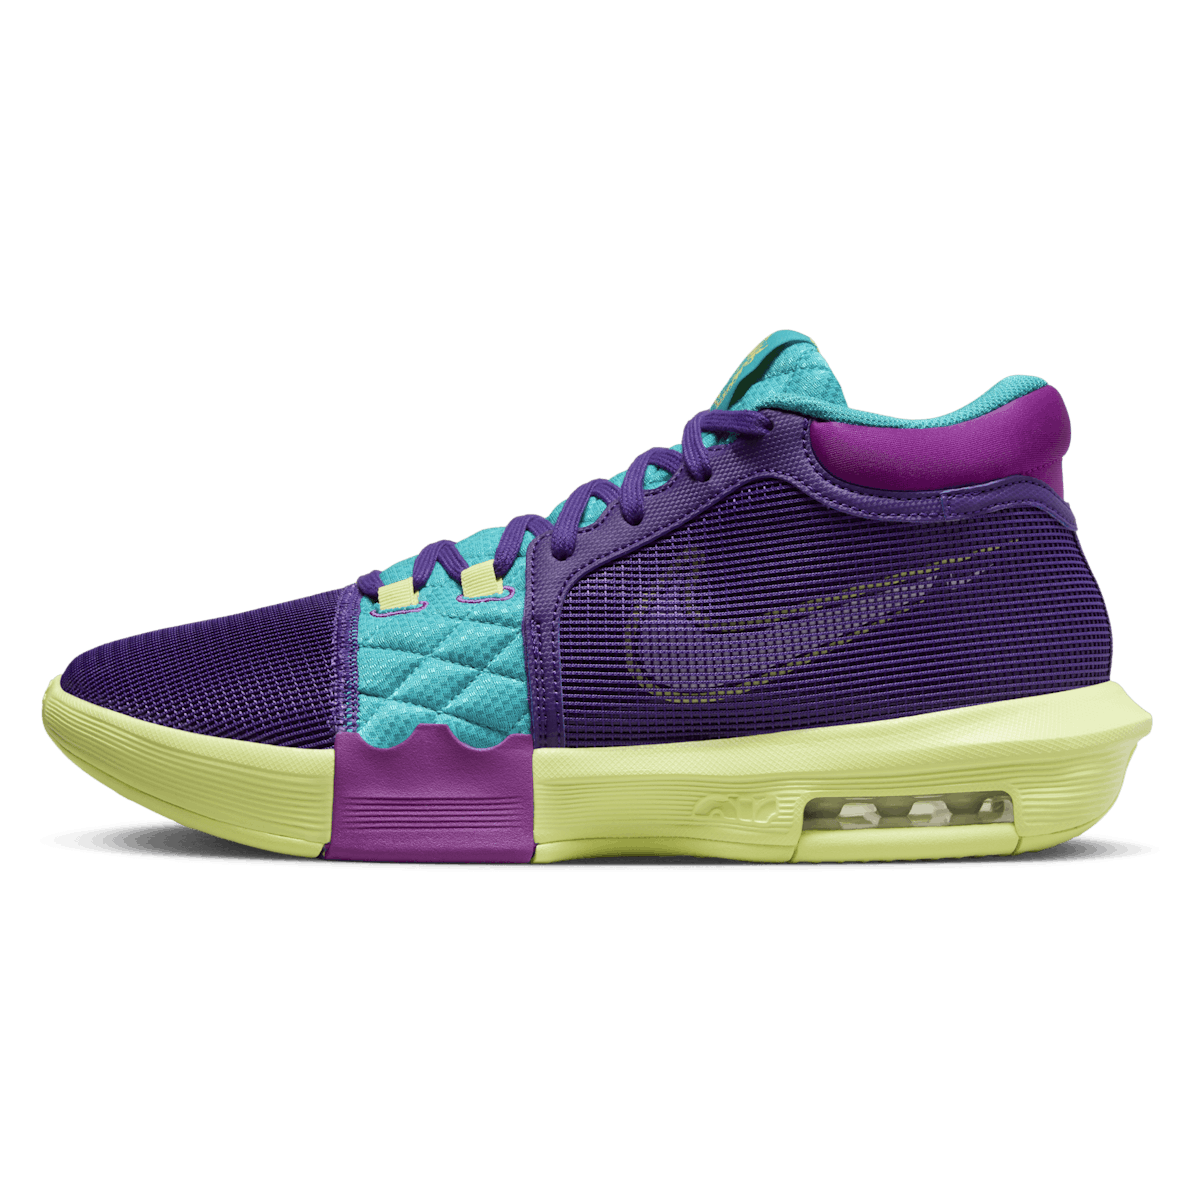 Nike LeBron Witness 8 Field Purple Dusty Cactus